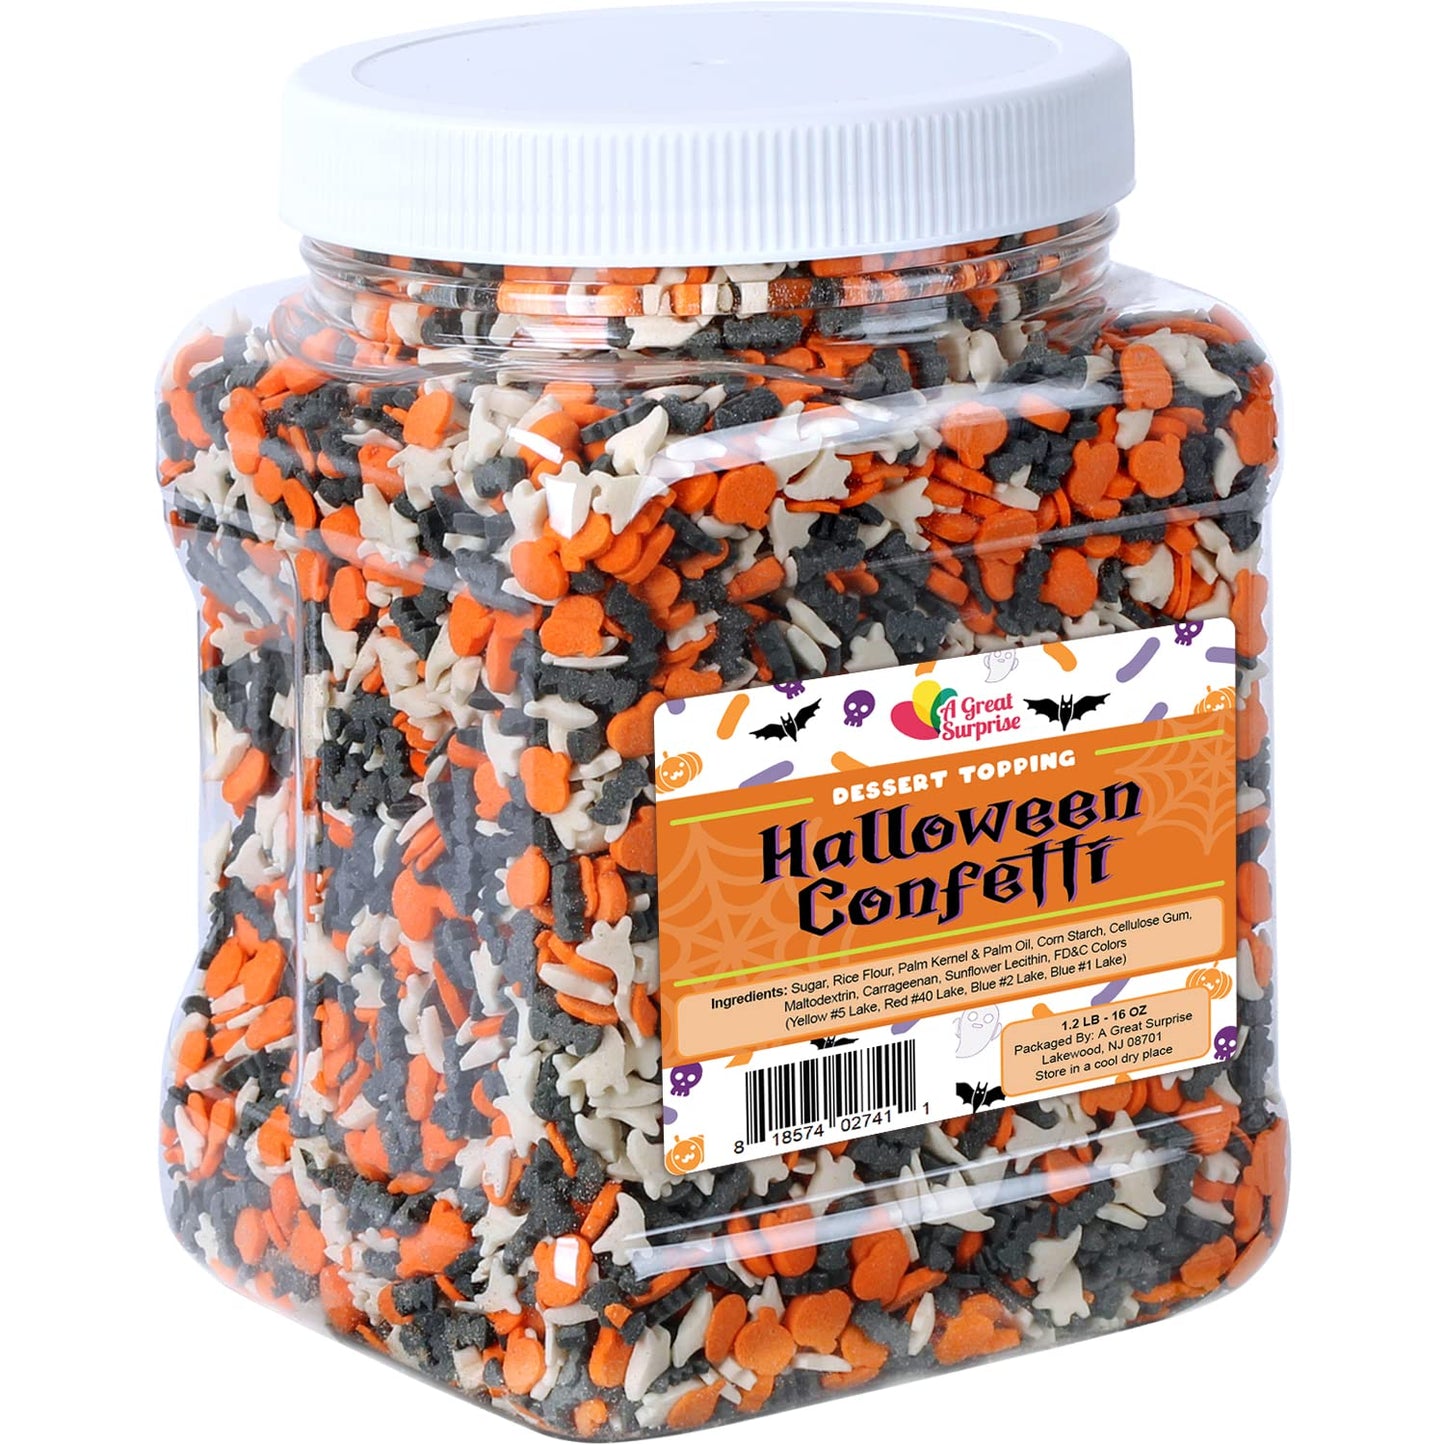 Halloween Confetti Sprinkles Bulk- Bat, Pumpkin & Ghosts Sprinkles - Spooky Toppings - 1.2 lbs - Great for Cookies, Cupcakes, Fall